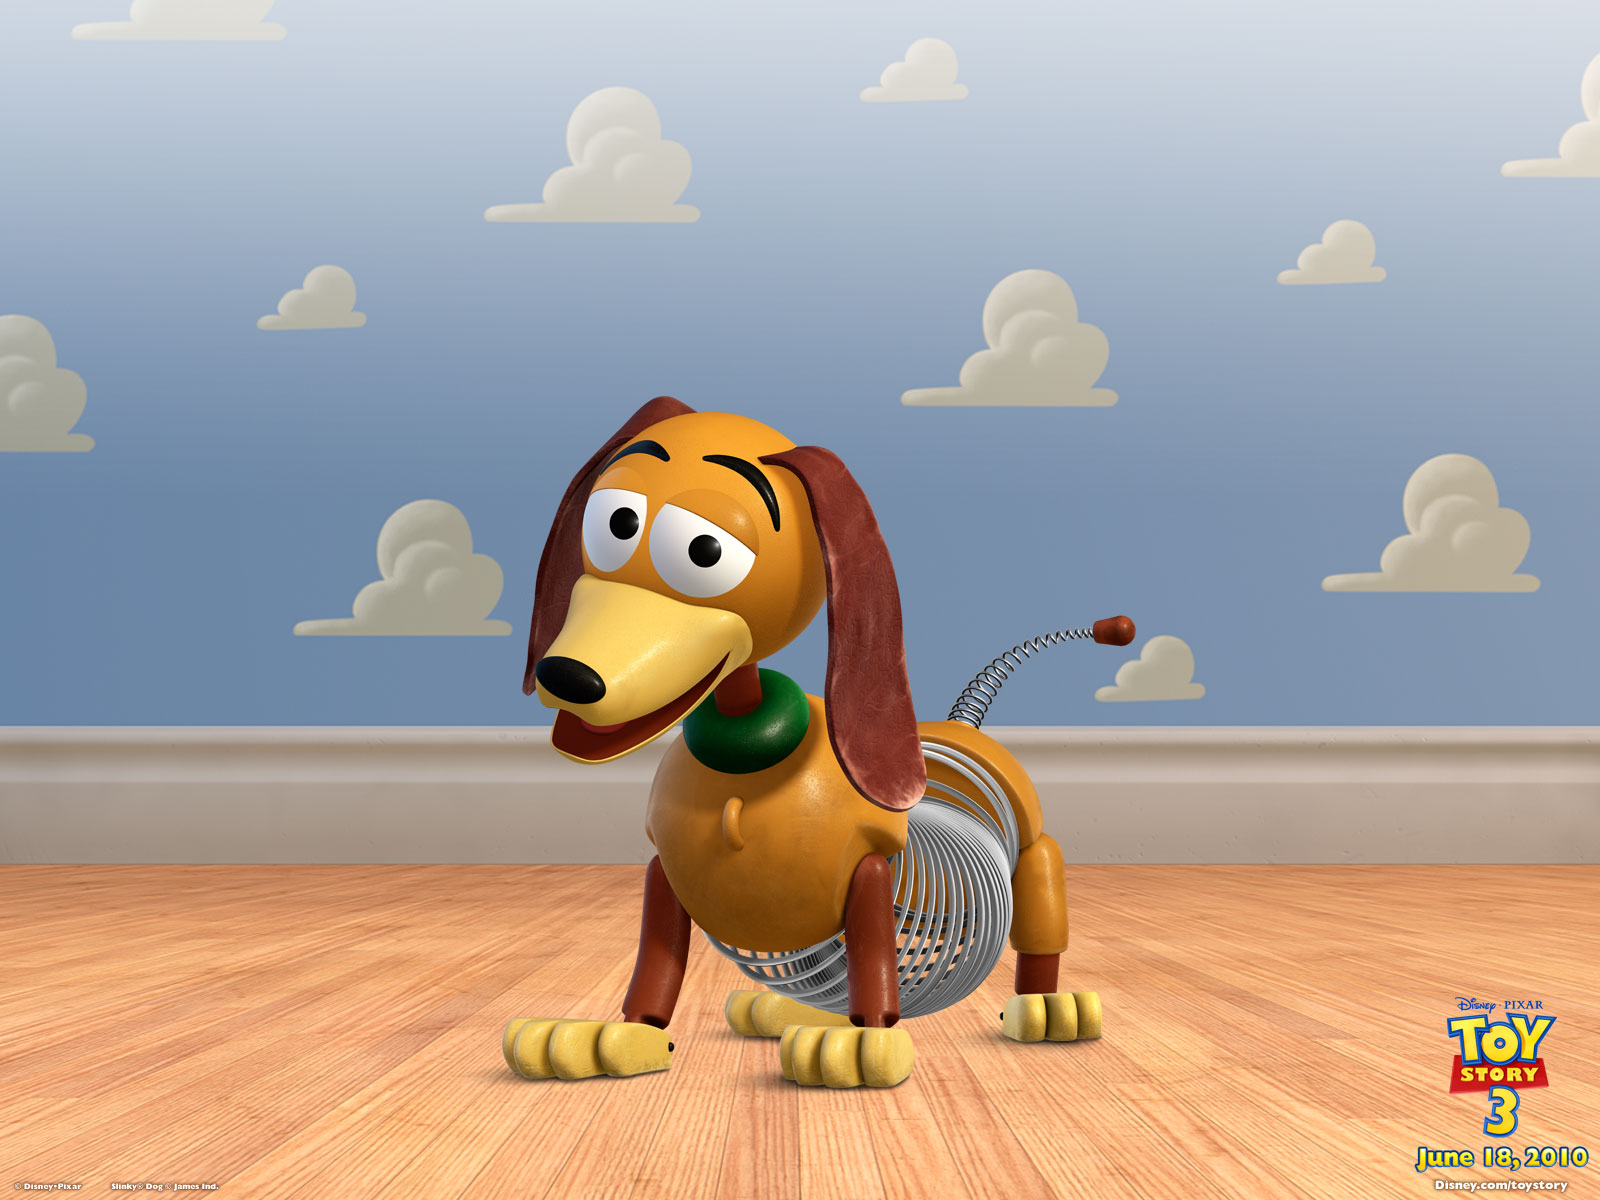 Toy Story 2 Slinky Dog - Original Toy Story Slinky Dog - HD Wallpaper 